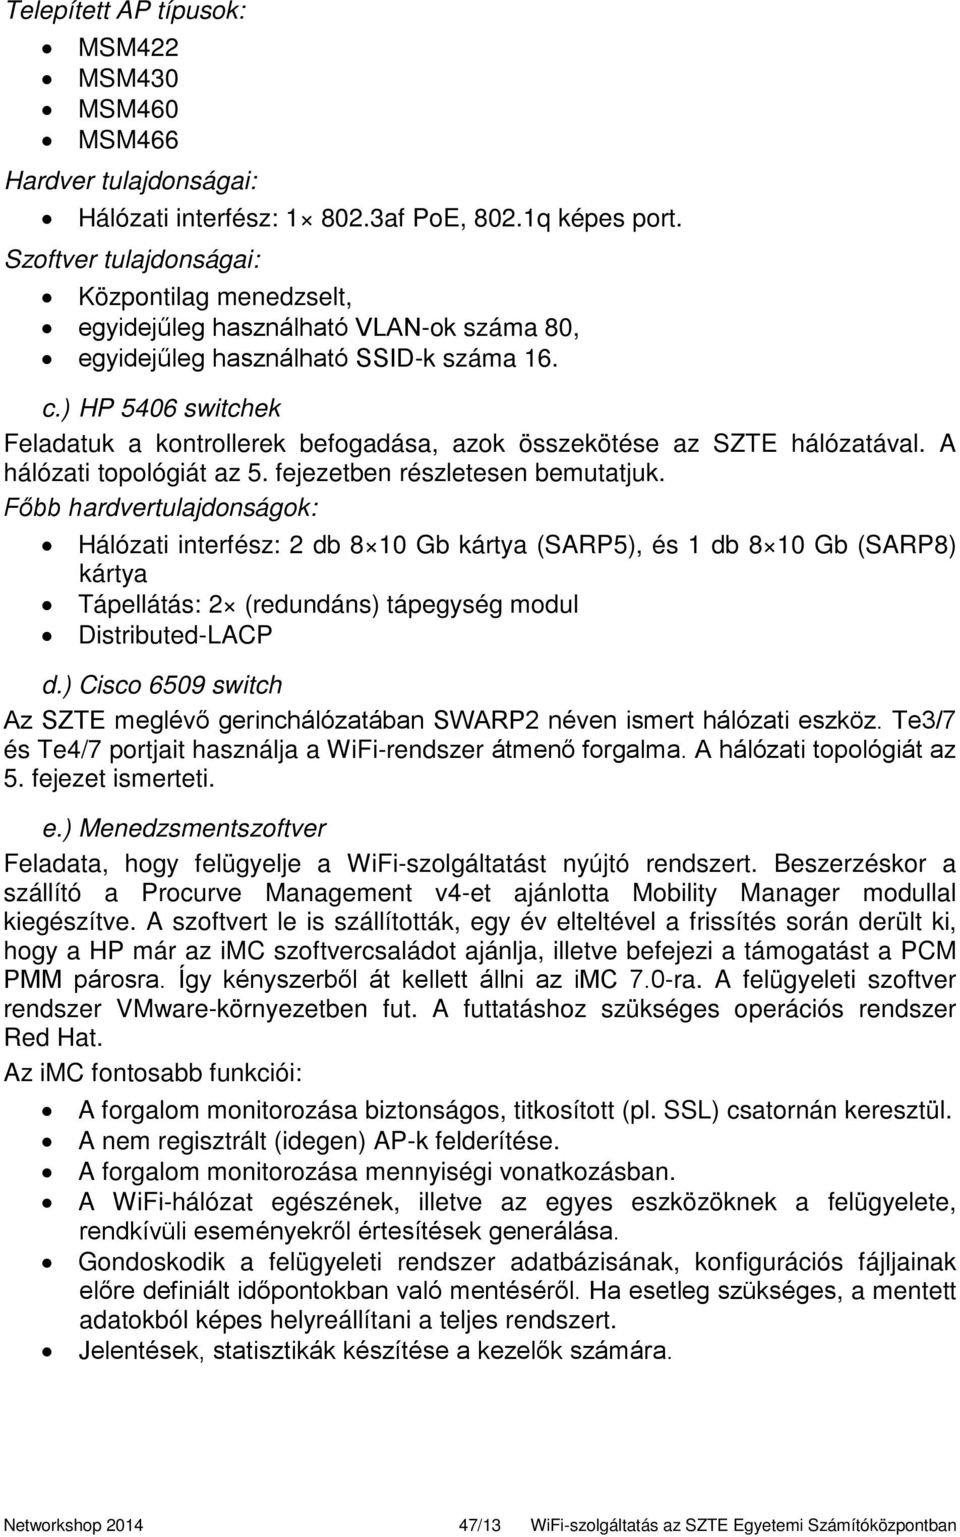 WiFi-szolgáltatás az SZTE Egyetemi Számítóközpontban I-II. - PDF Ingyenes  letöltés